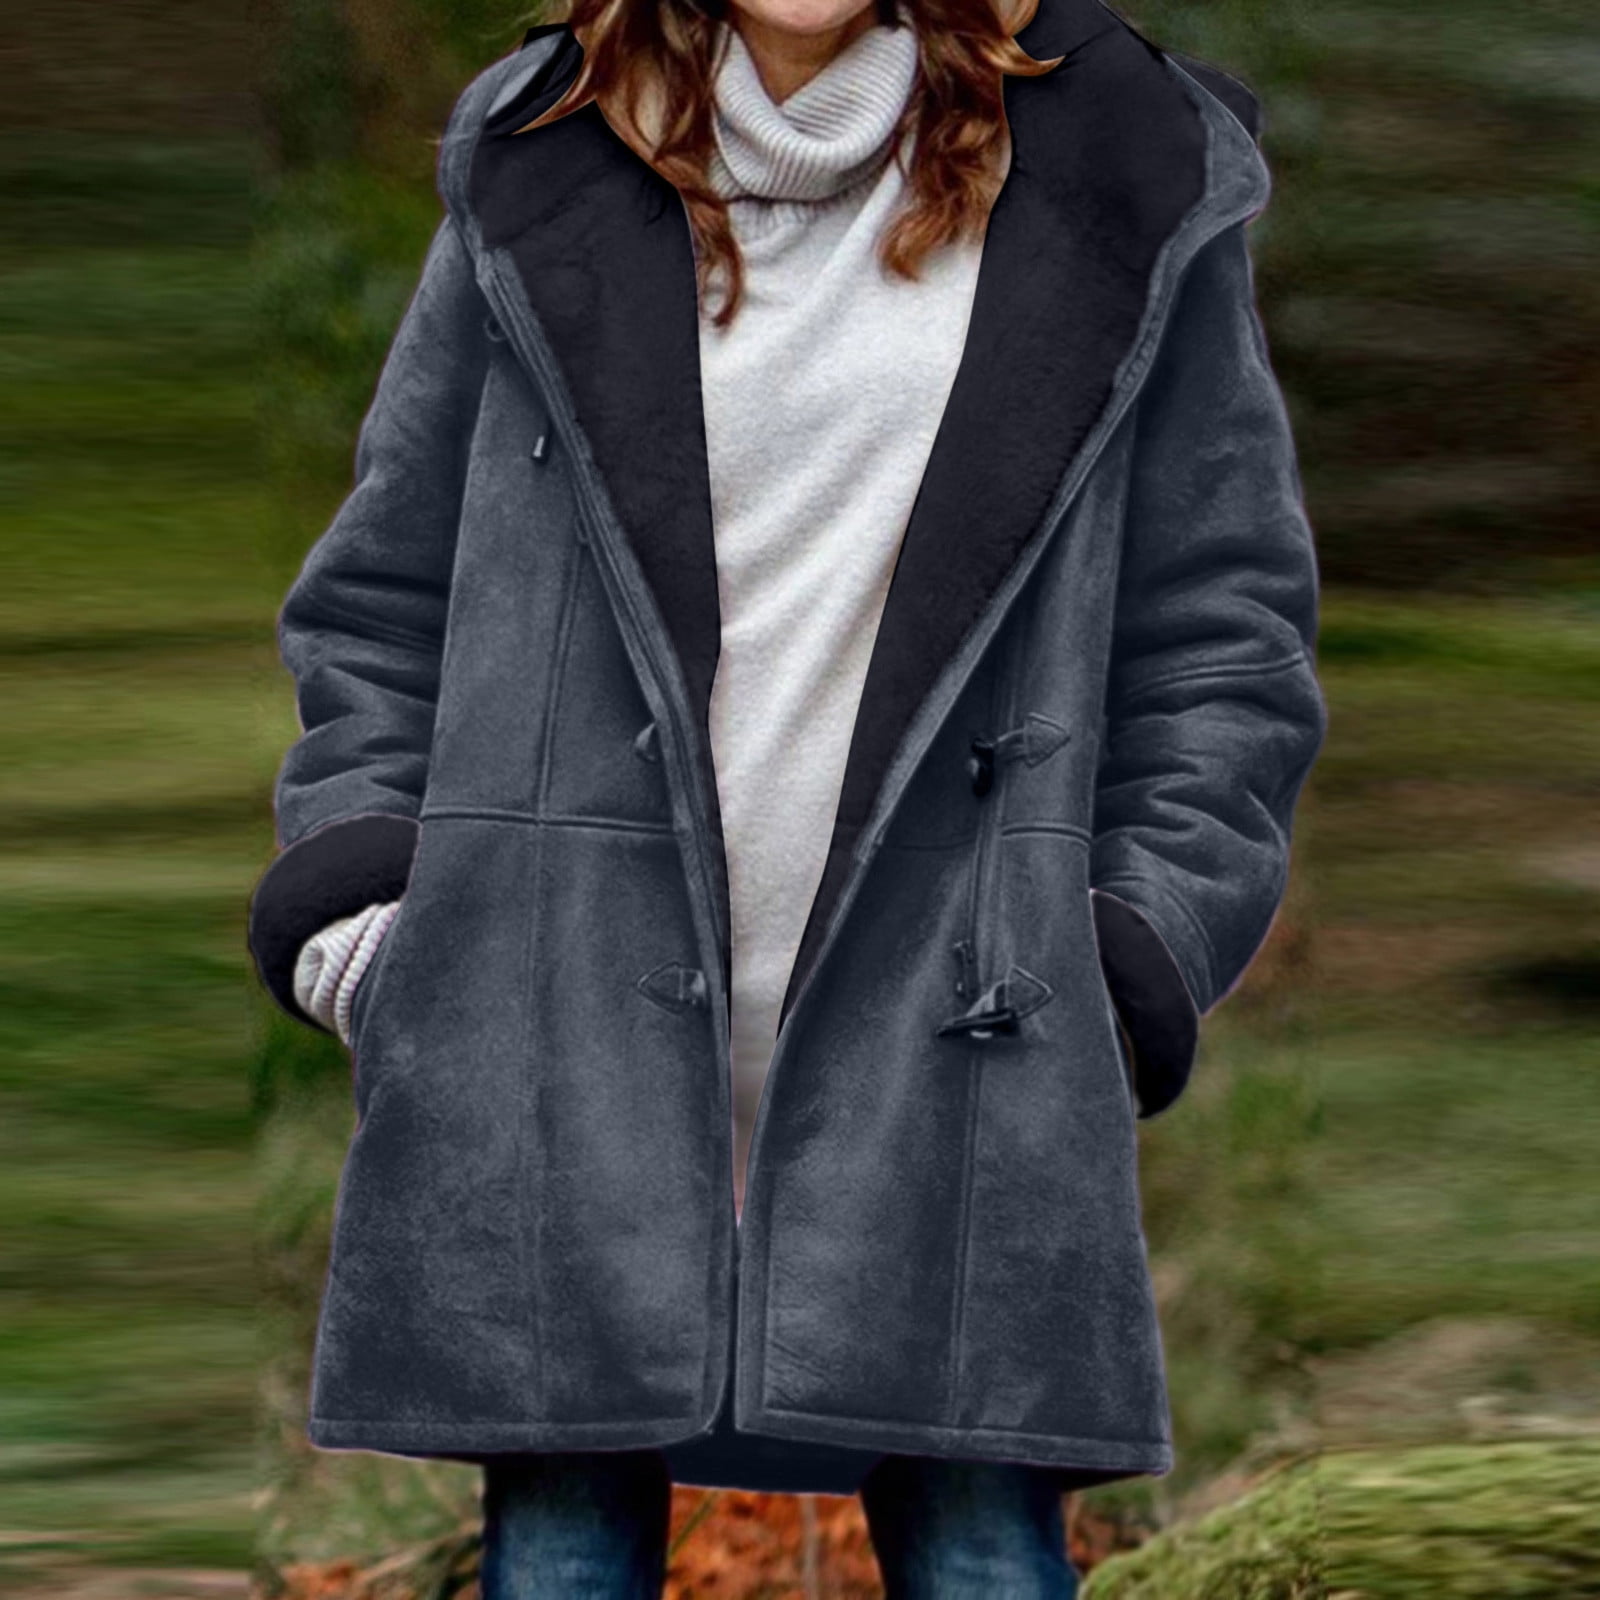 Fleece Jacket for Women Clearance Sale,Winter Warm Sherpa Lined Coats  Jackets for Women Plus Size Hooded Parka Faux Suede Long Pea Coat Outerwear  